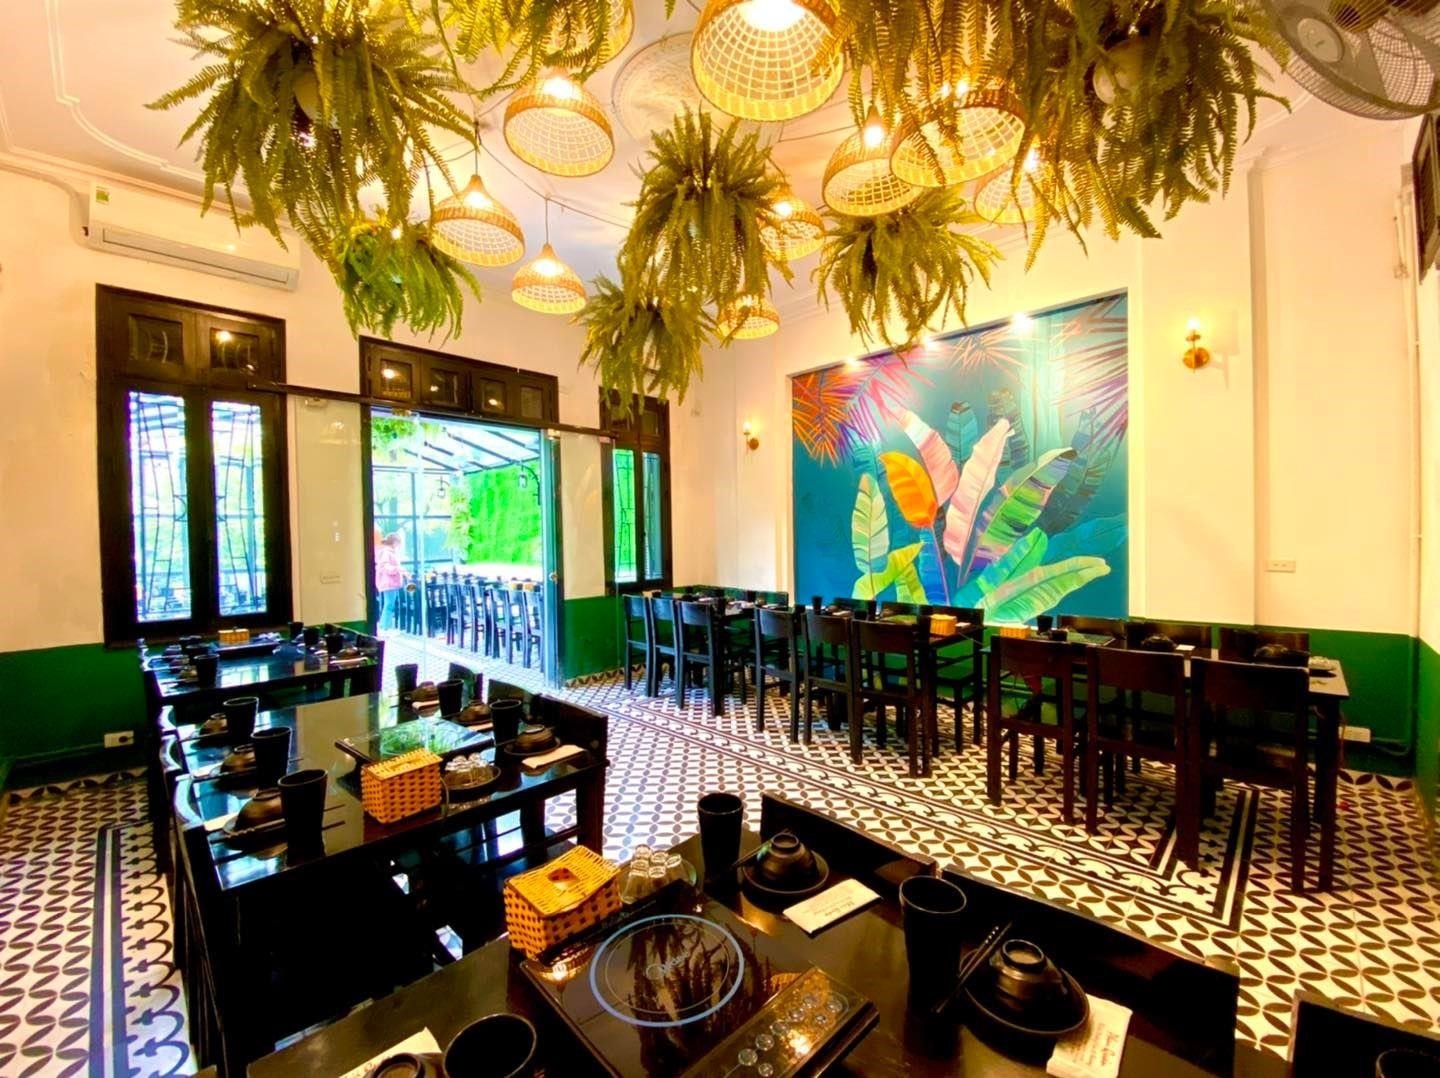 Nhà hàng Phủi Quán. nổi tiếng với không gian truyền thống và phục vụ các món ăn đặc sản đậm chất văn hóa Việt Nam.